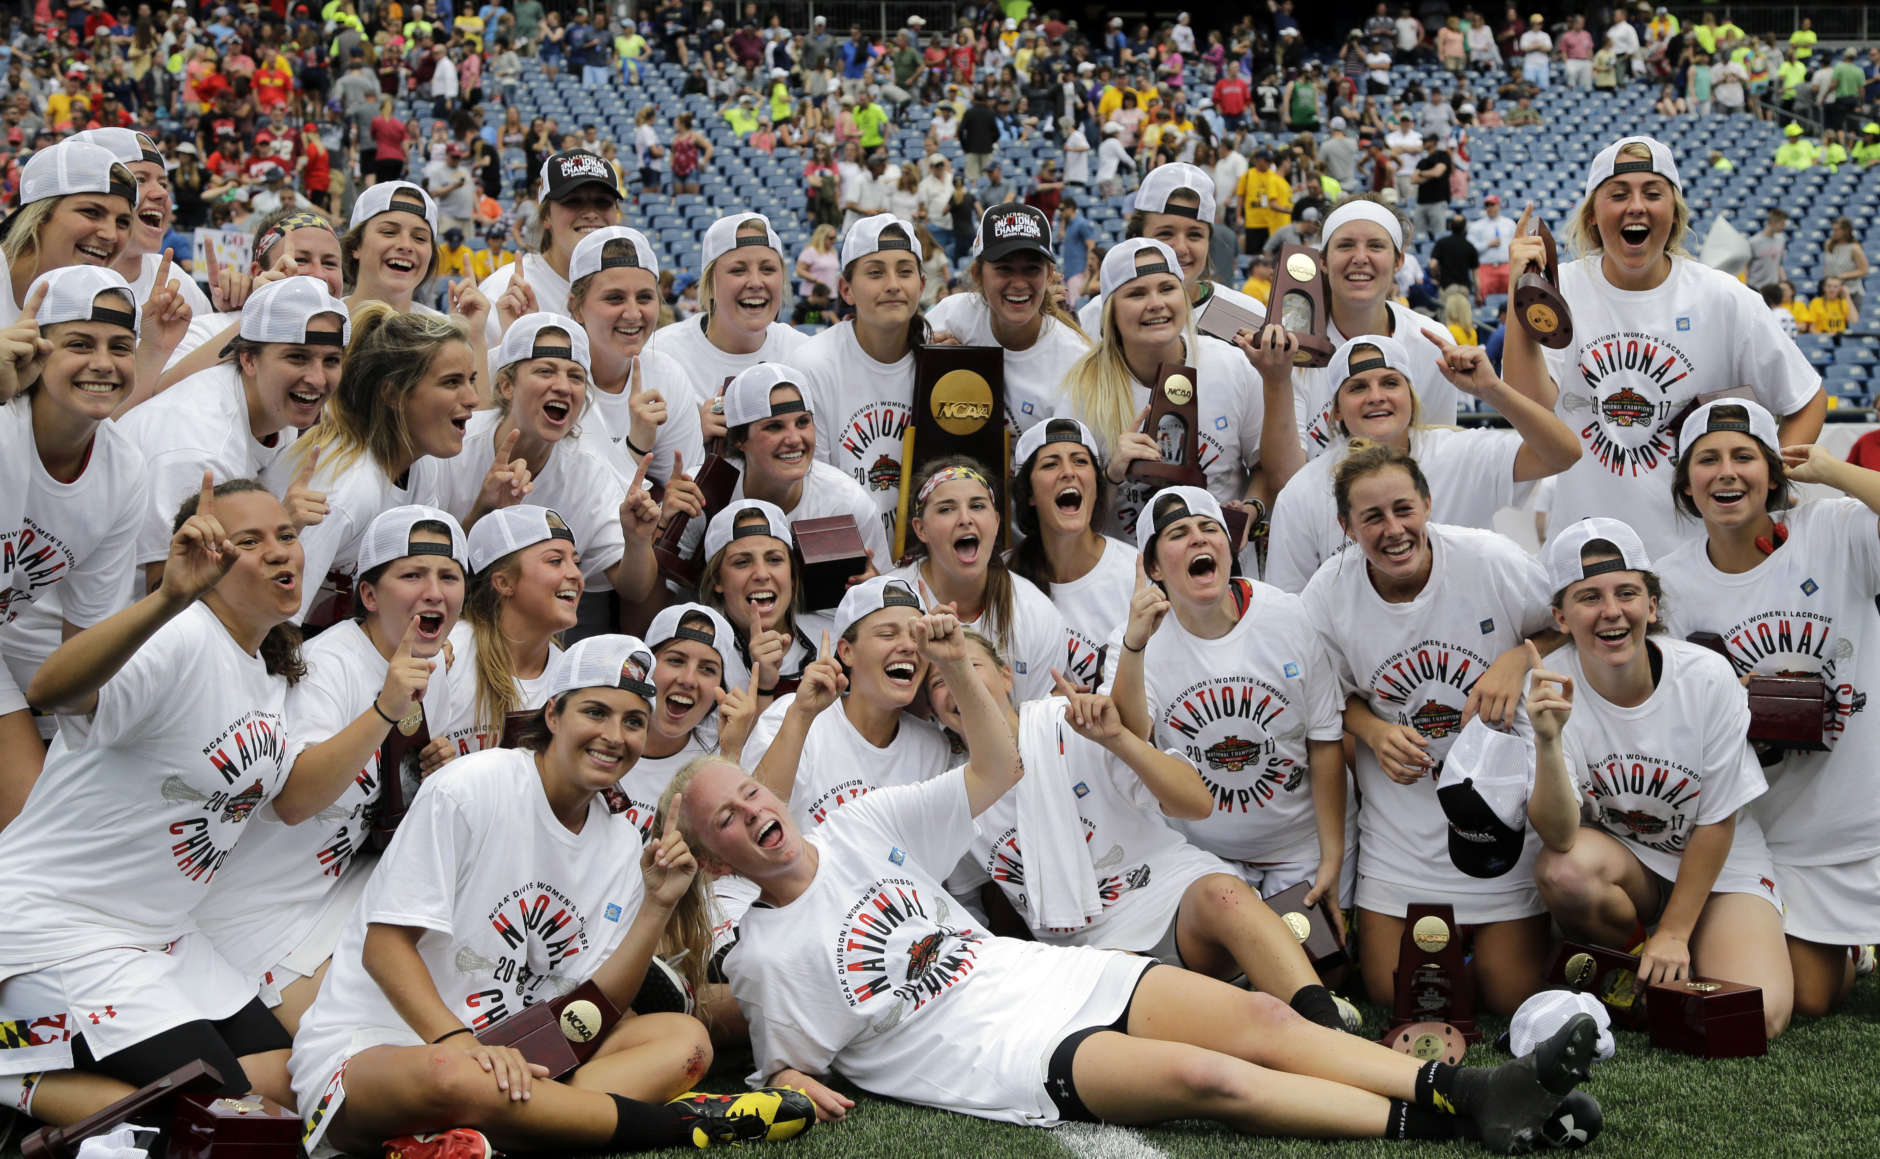 U.Md. women’s lacrosse wins NCAA Championship WTOP News